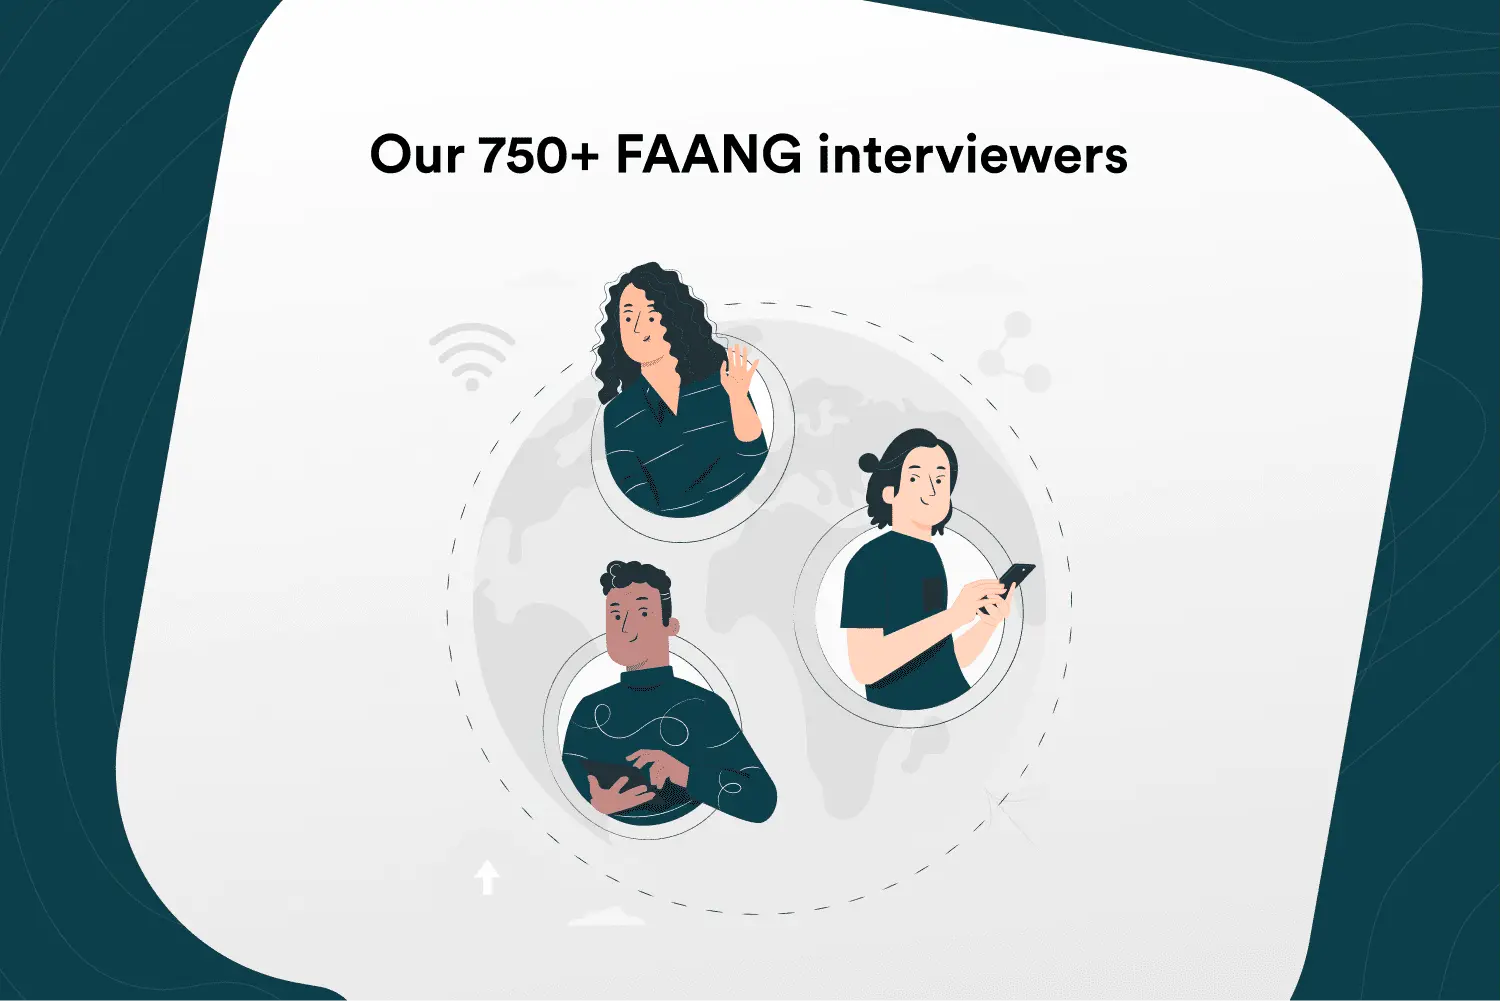 InterviewDesk’s platform uses a workforce of 750+ seasoned FAANG